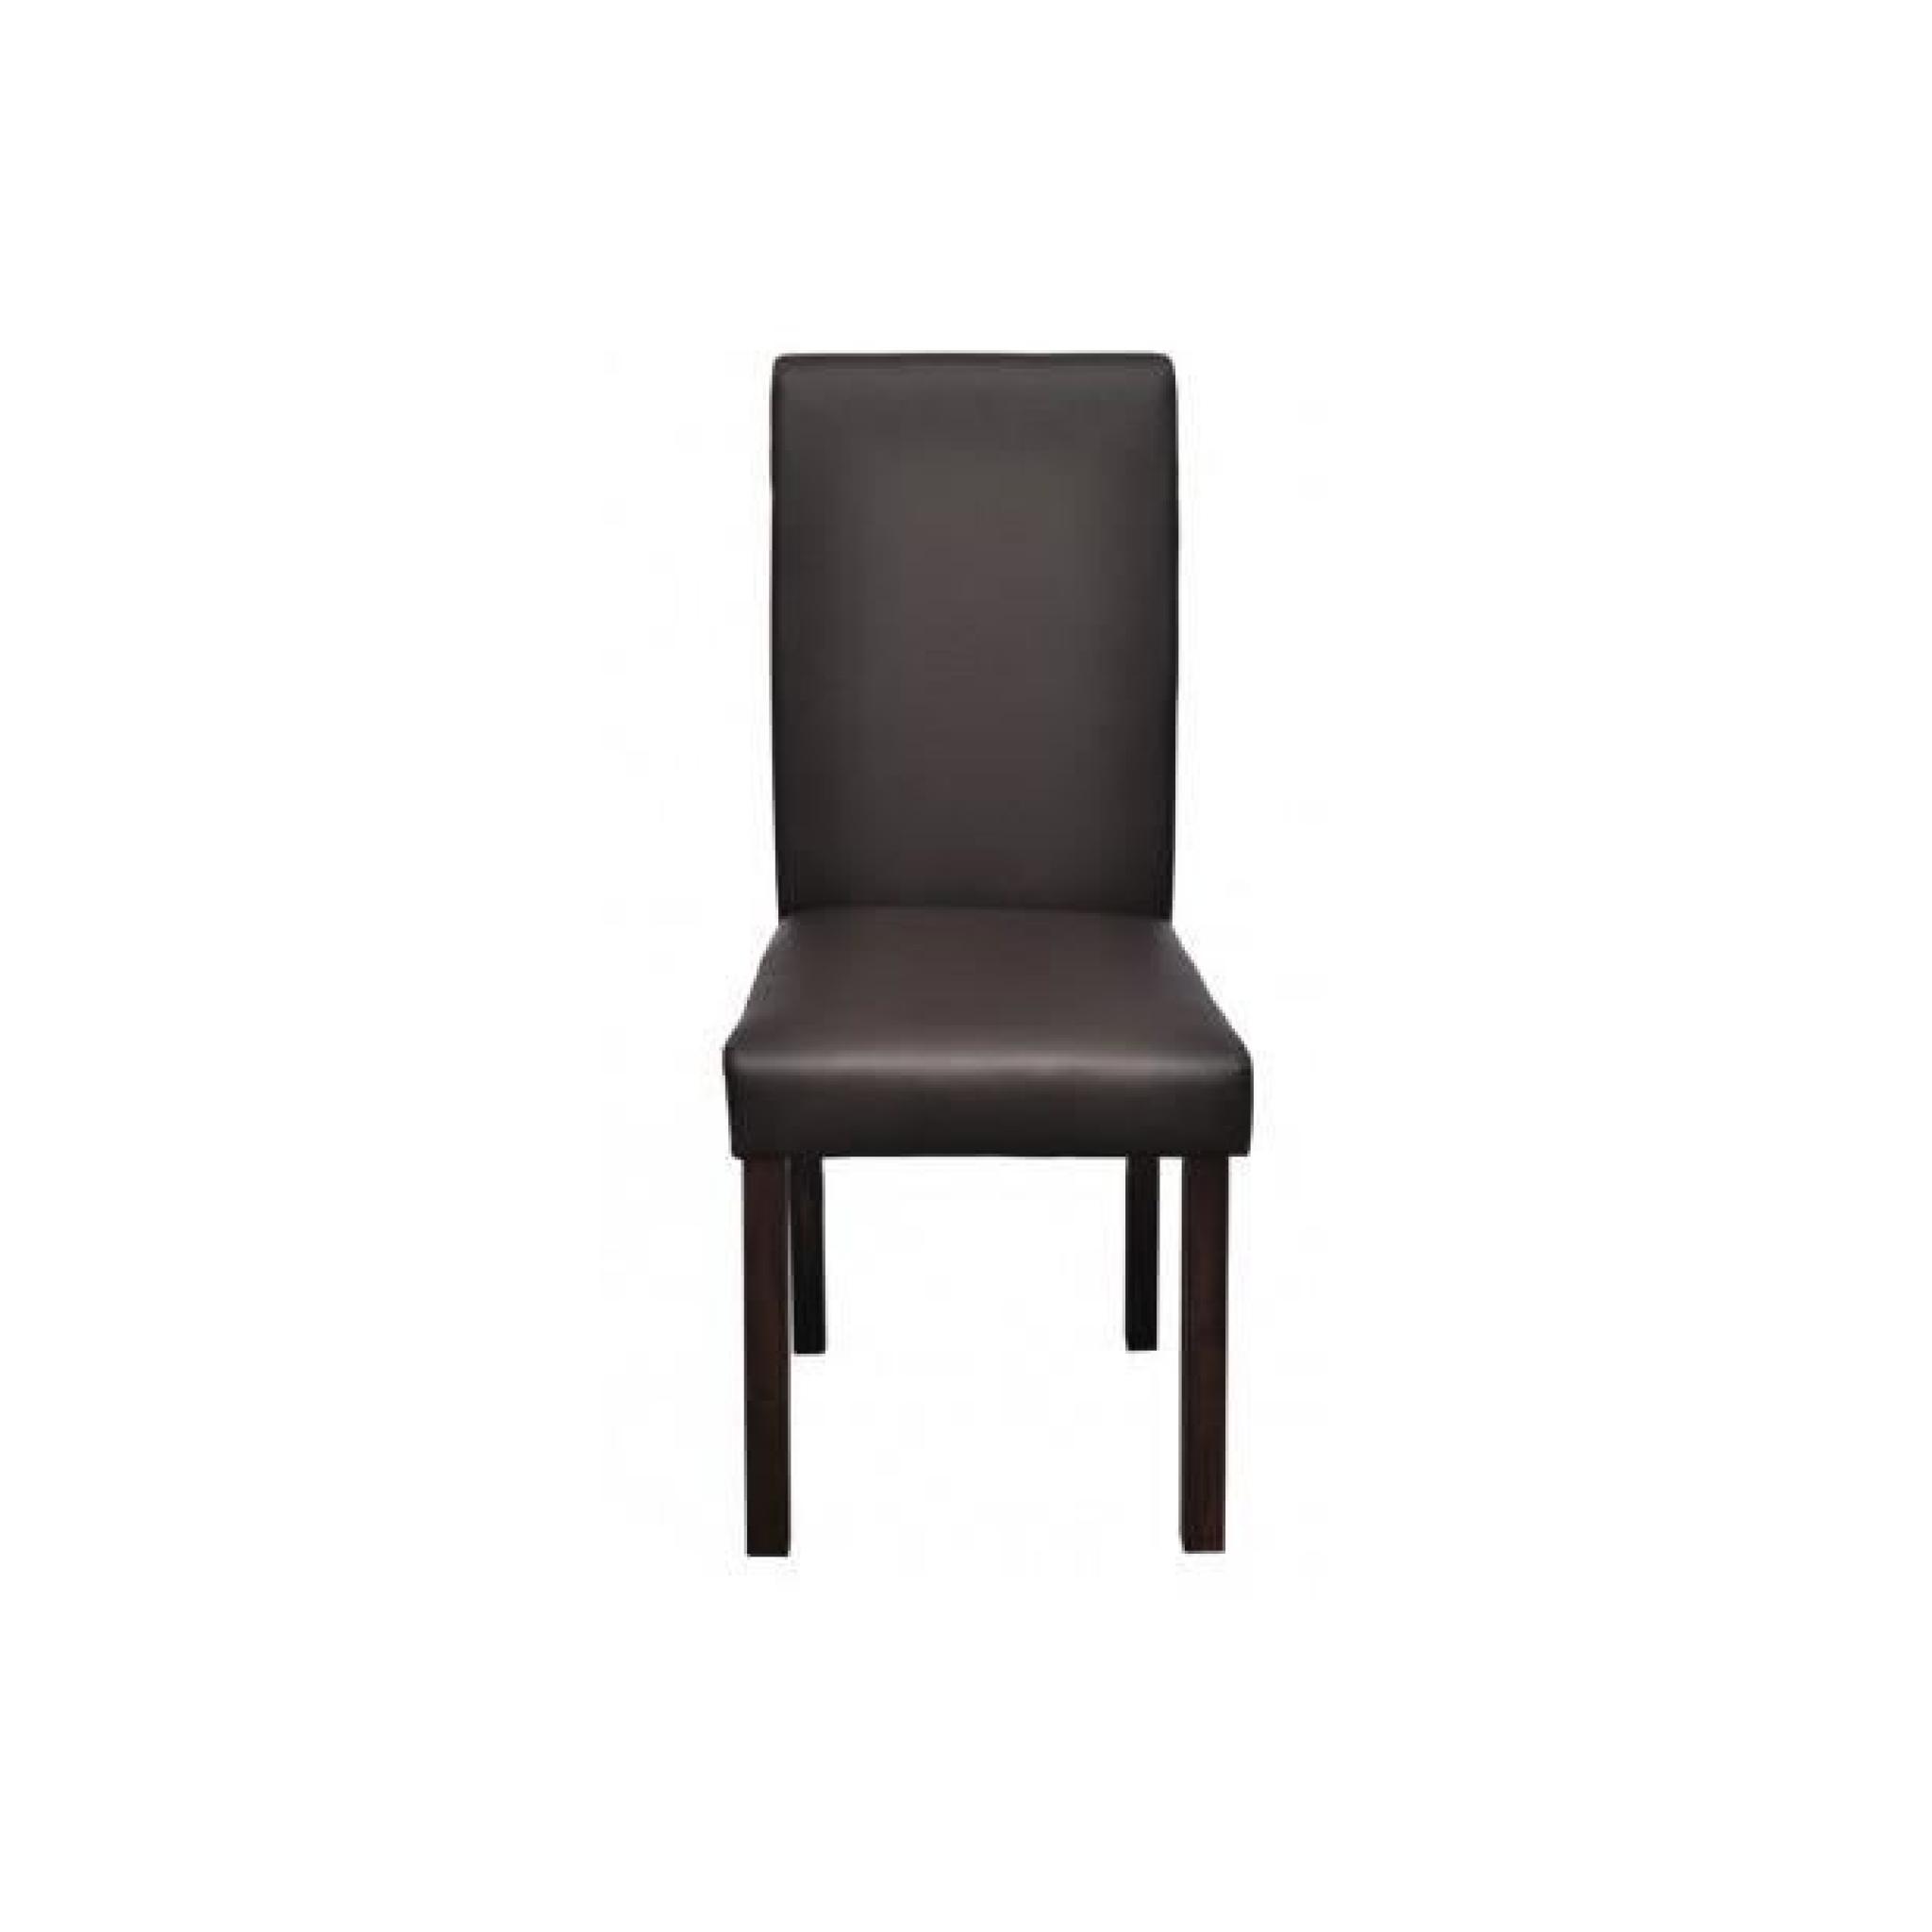 Superbe Chaise en cuir design colonial marron bois (lot de 6)   pas cher